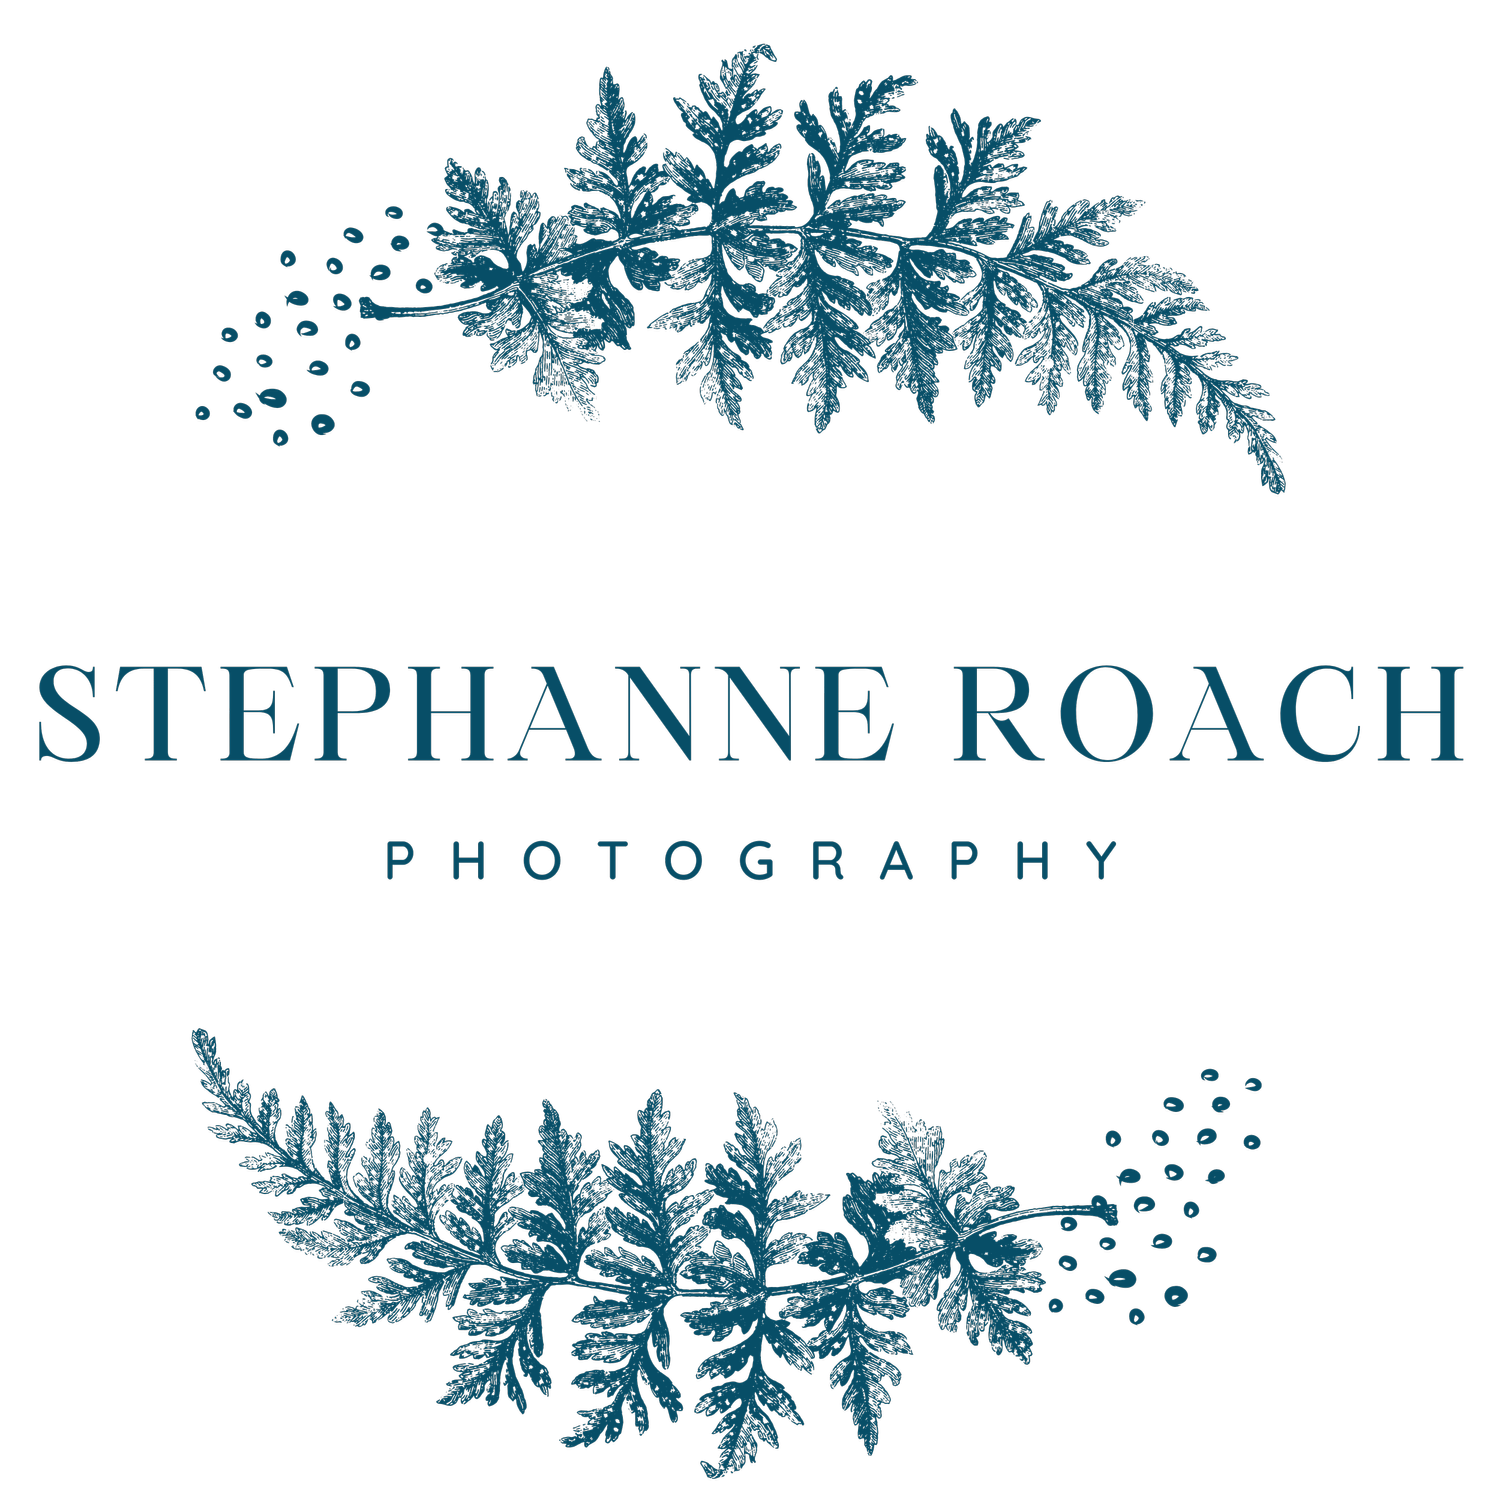 Stephanne Roach Photography